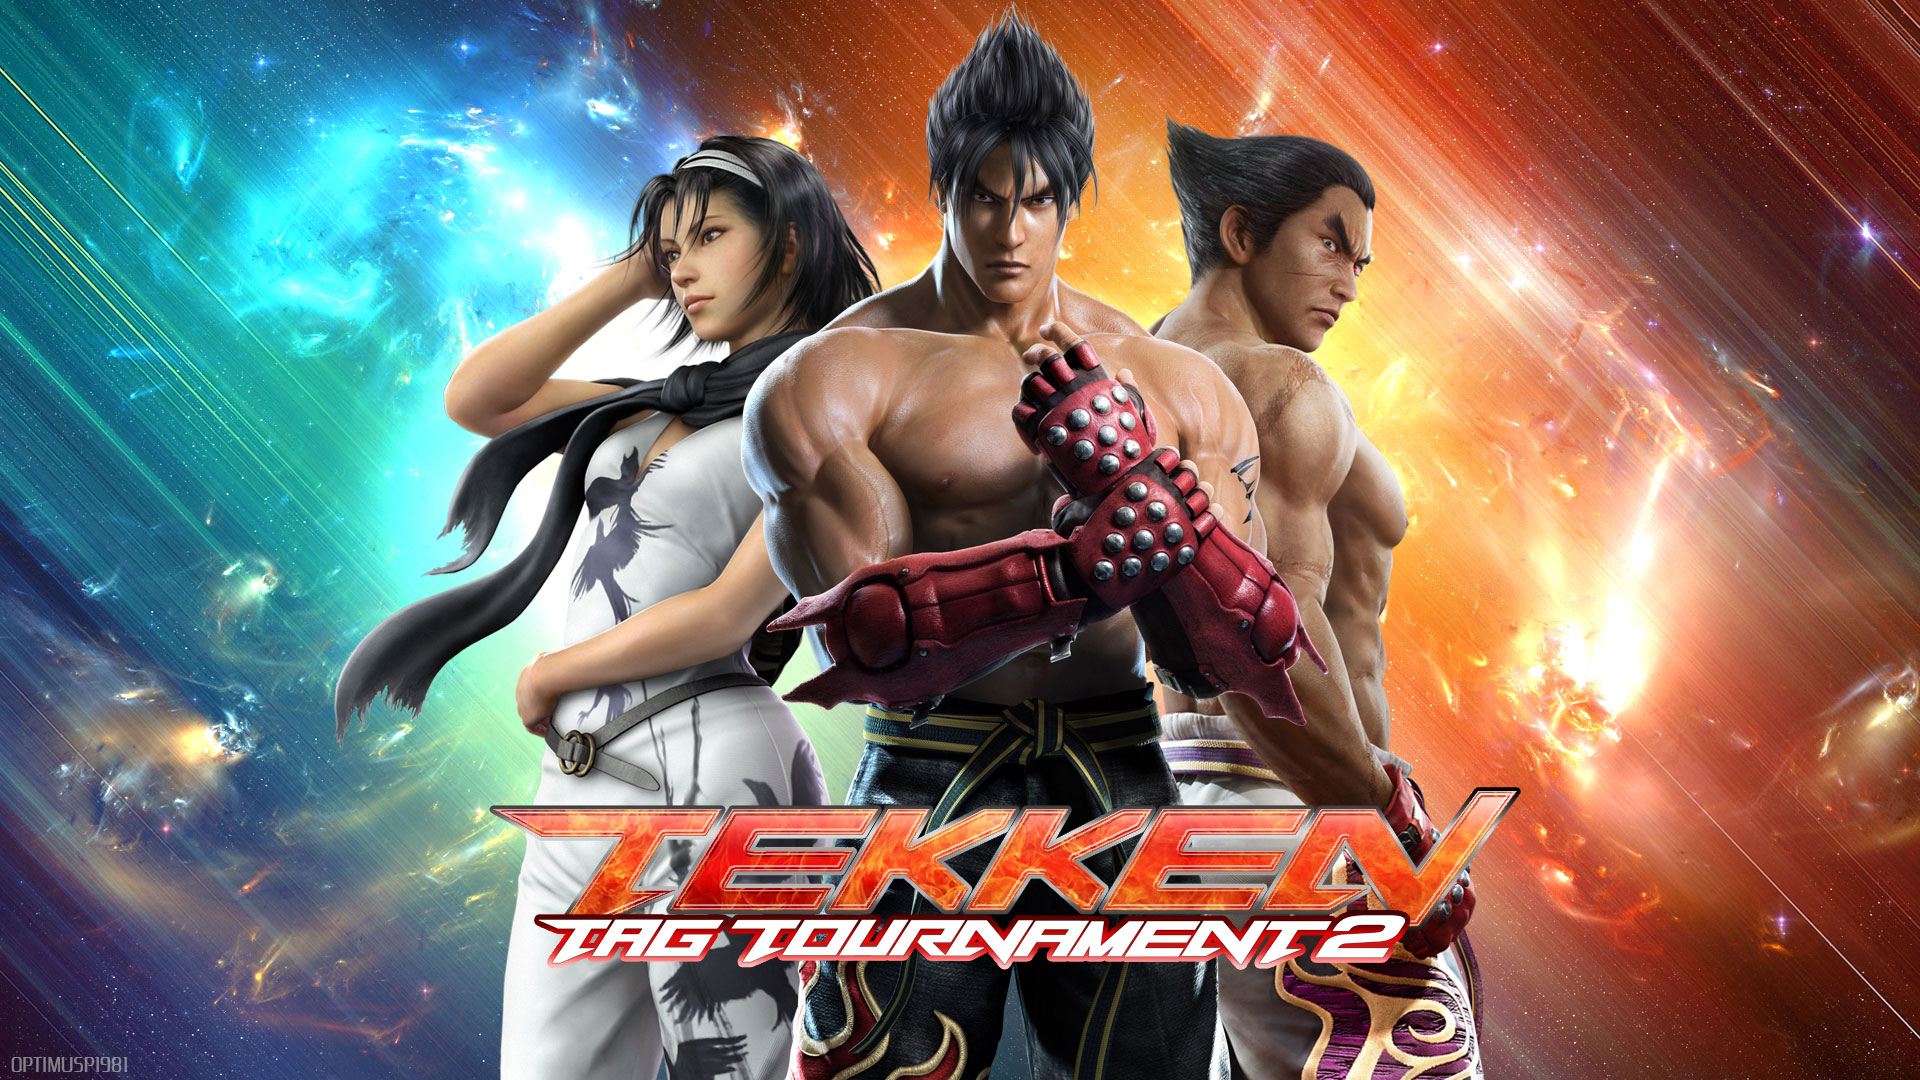 Tekken Tournament 2 Darkstation